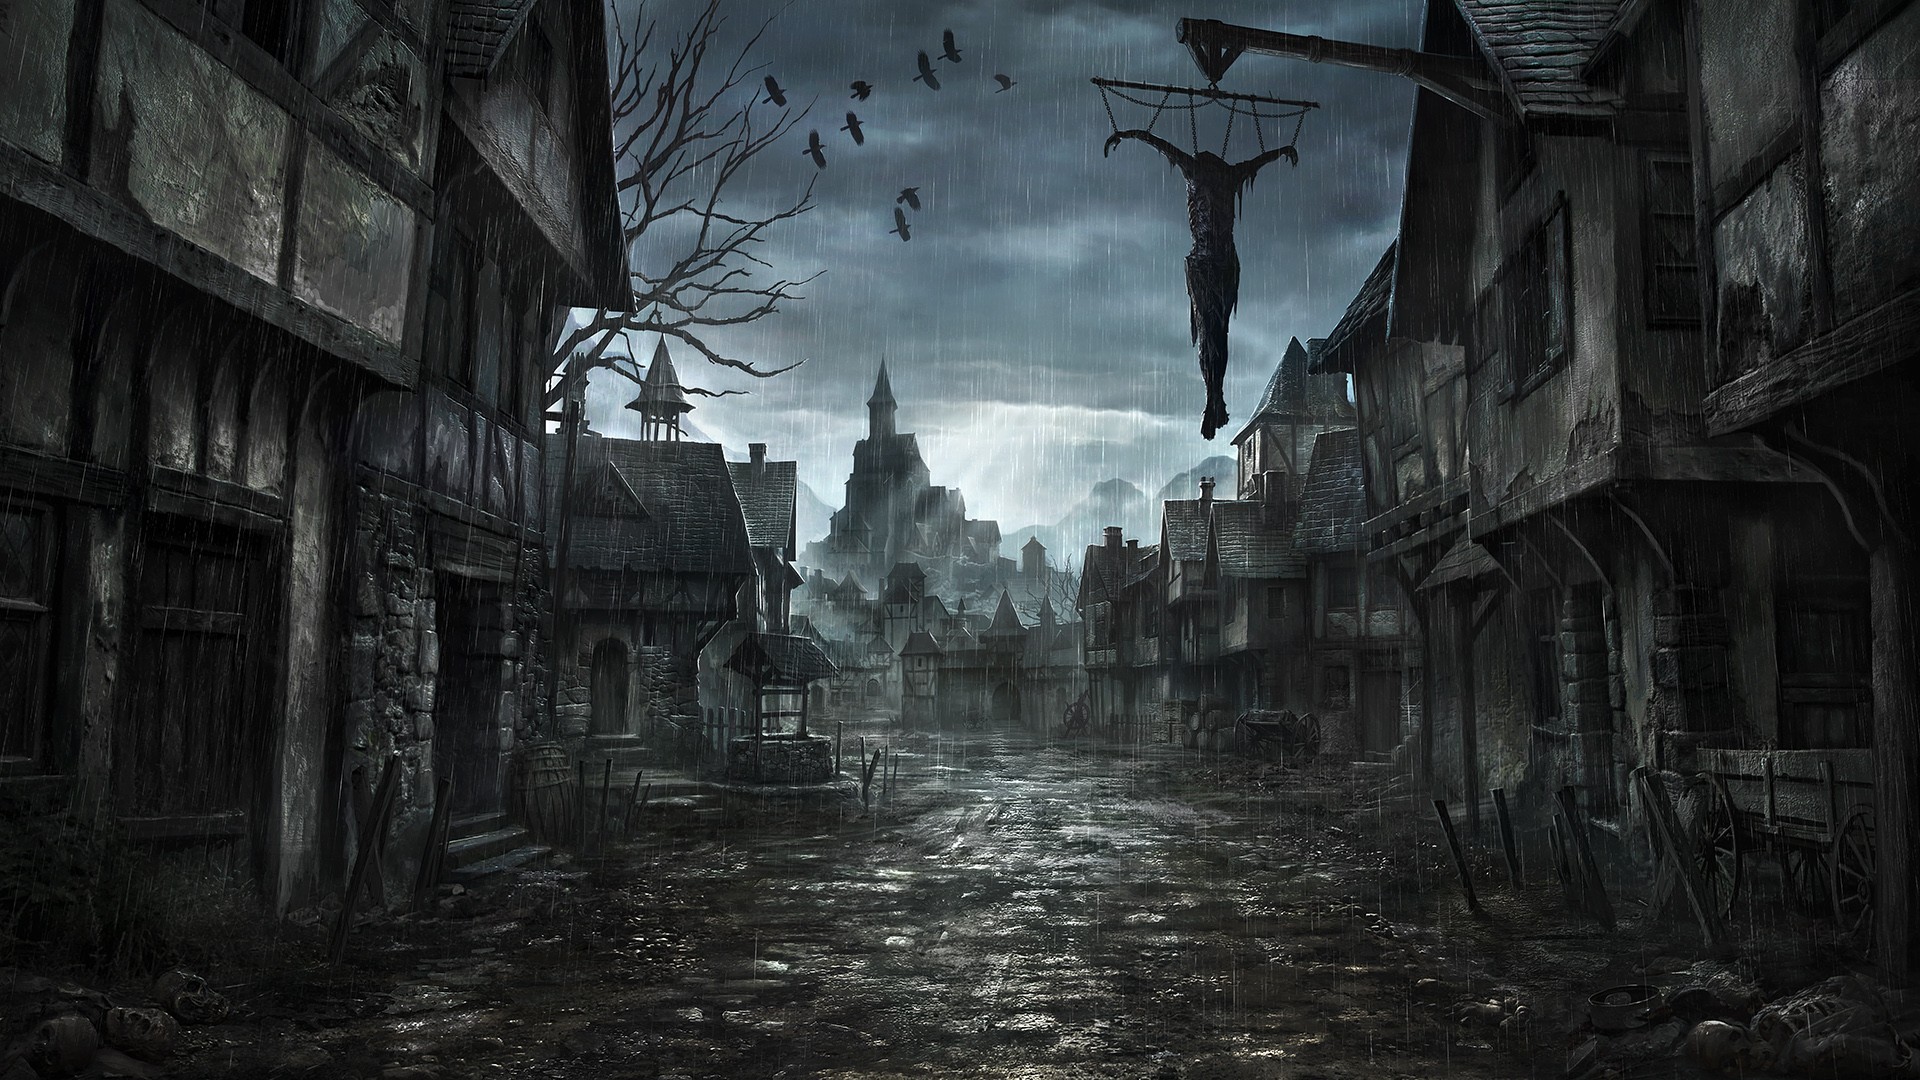 General 1920x1080 fantasy art fantasy city dark fantasy dark video games Dead Man crow town village video game art rain Bloodborne house